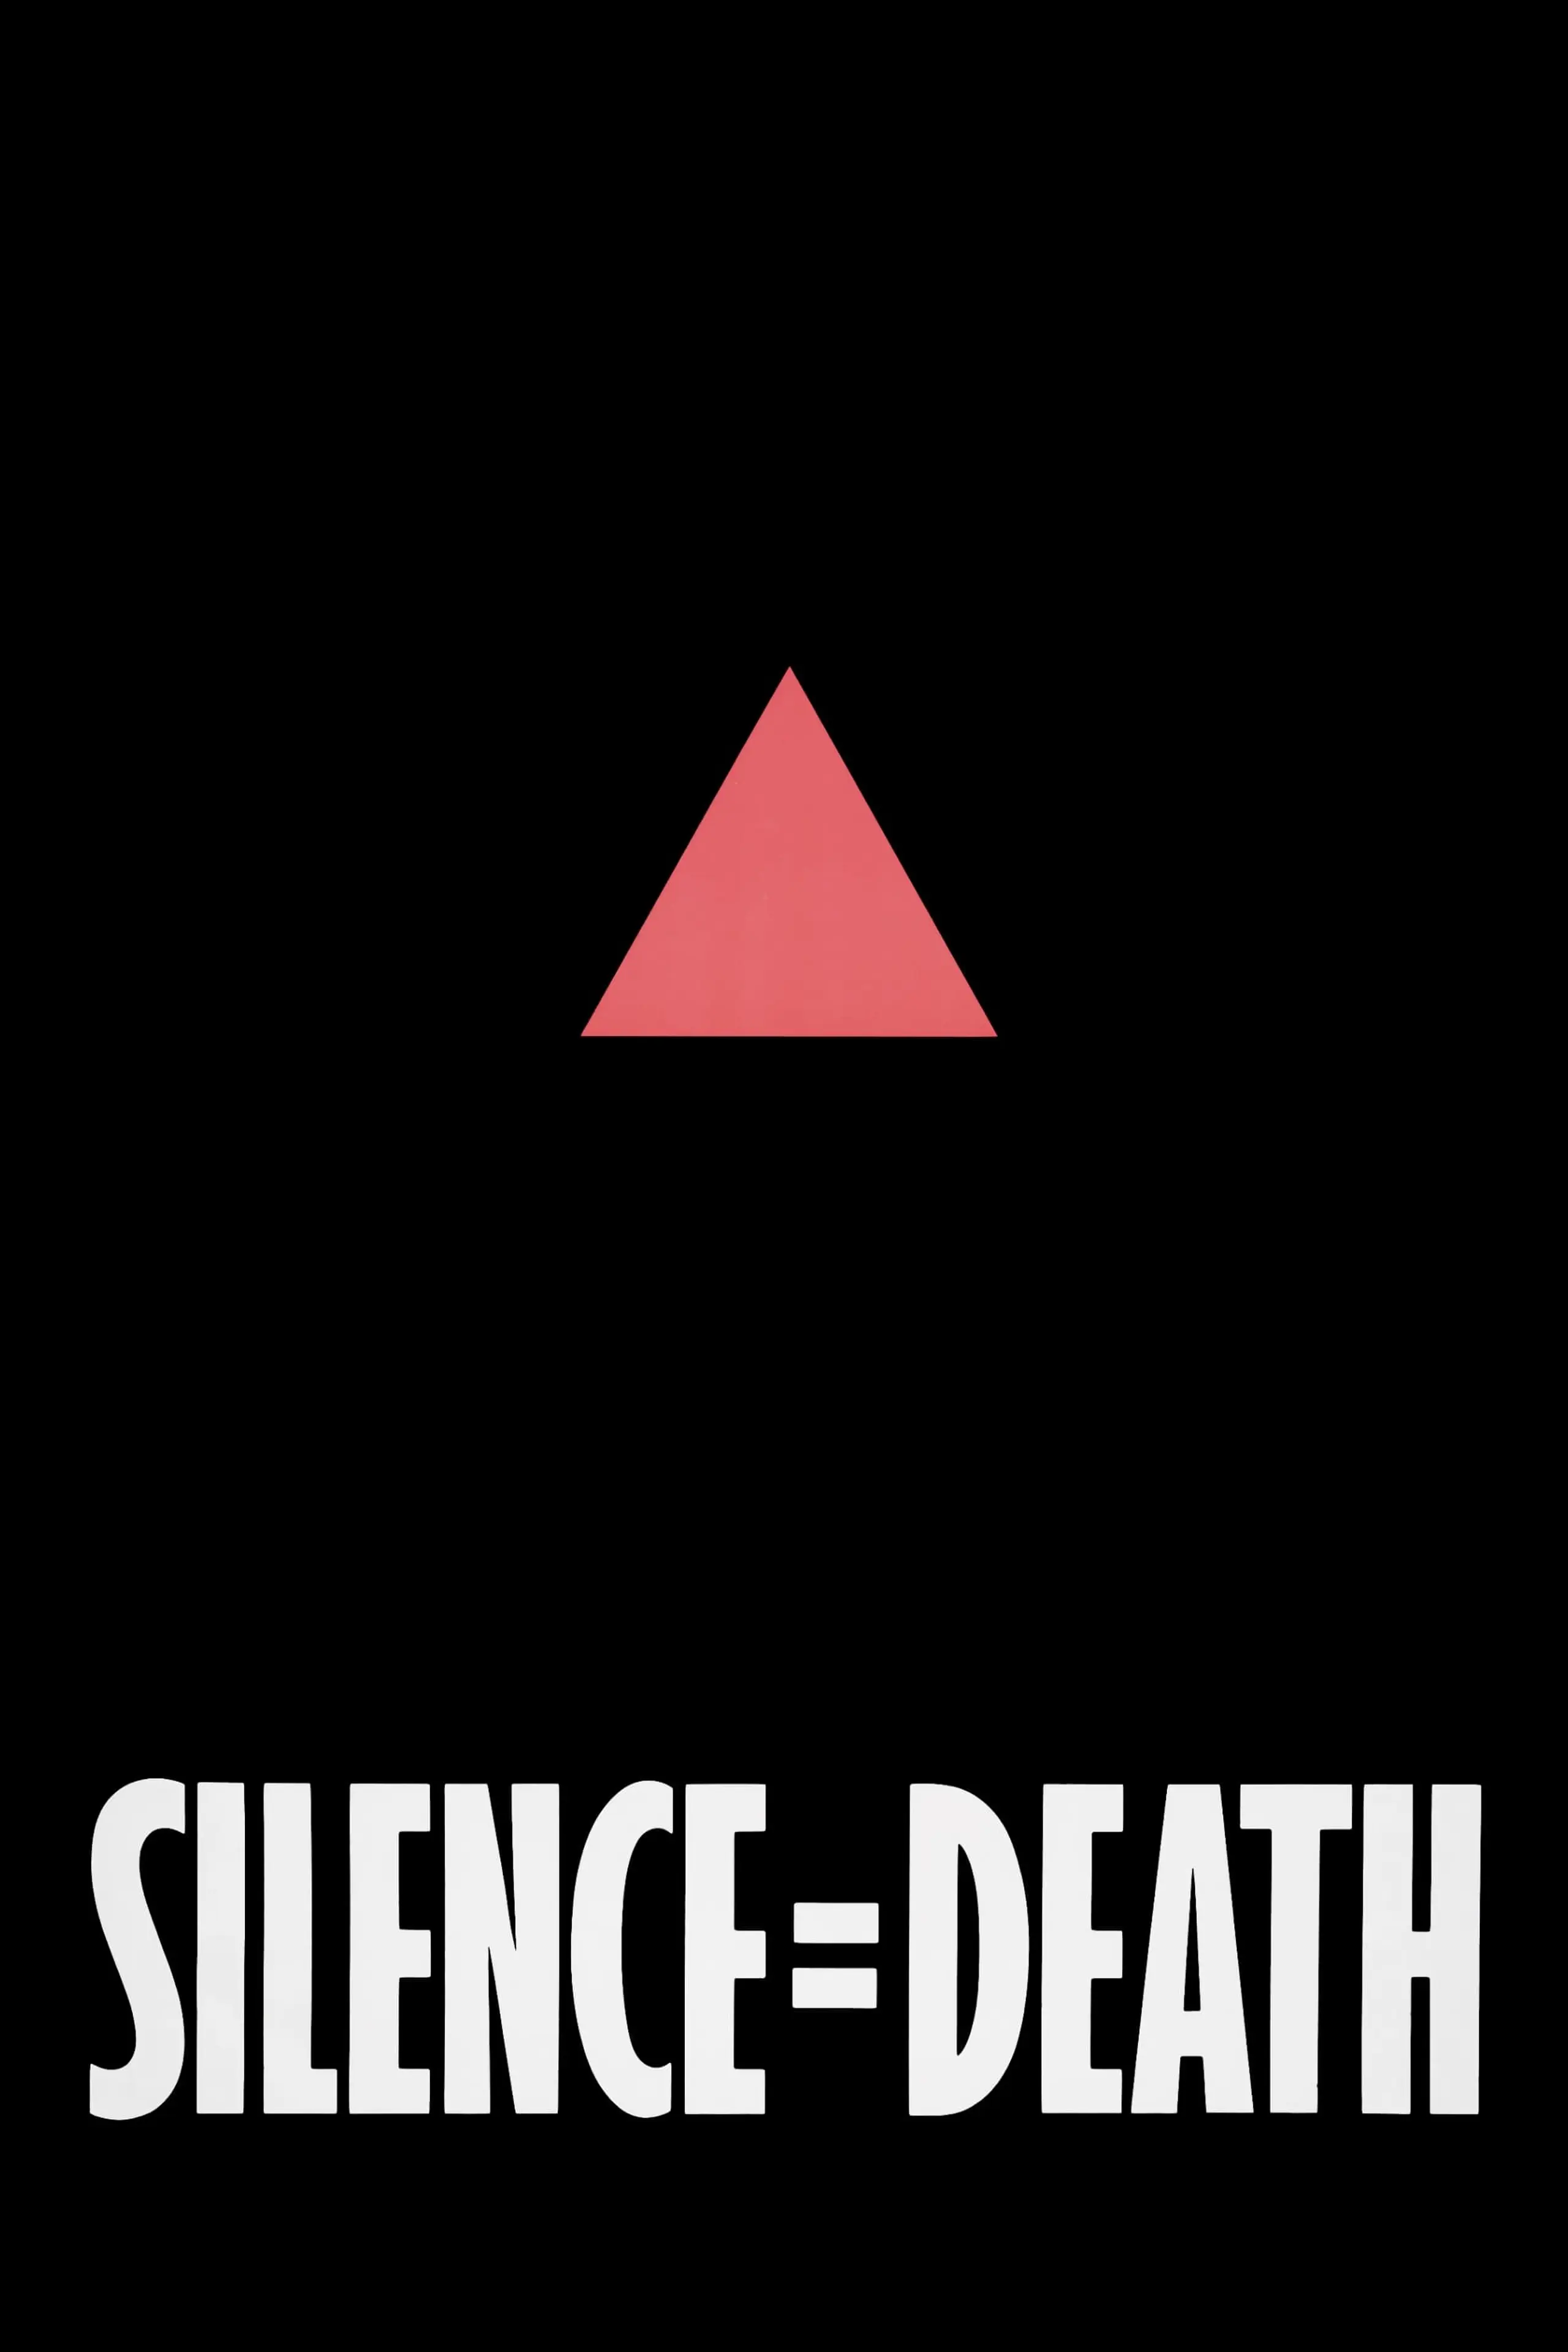 Die Aids-Trilogie: Schweigen = Tod – Künstler in New York kämpfen gegen AIDS